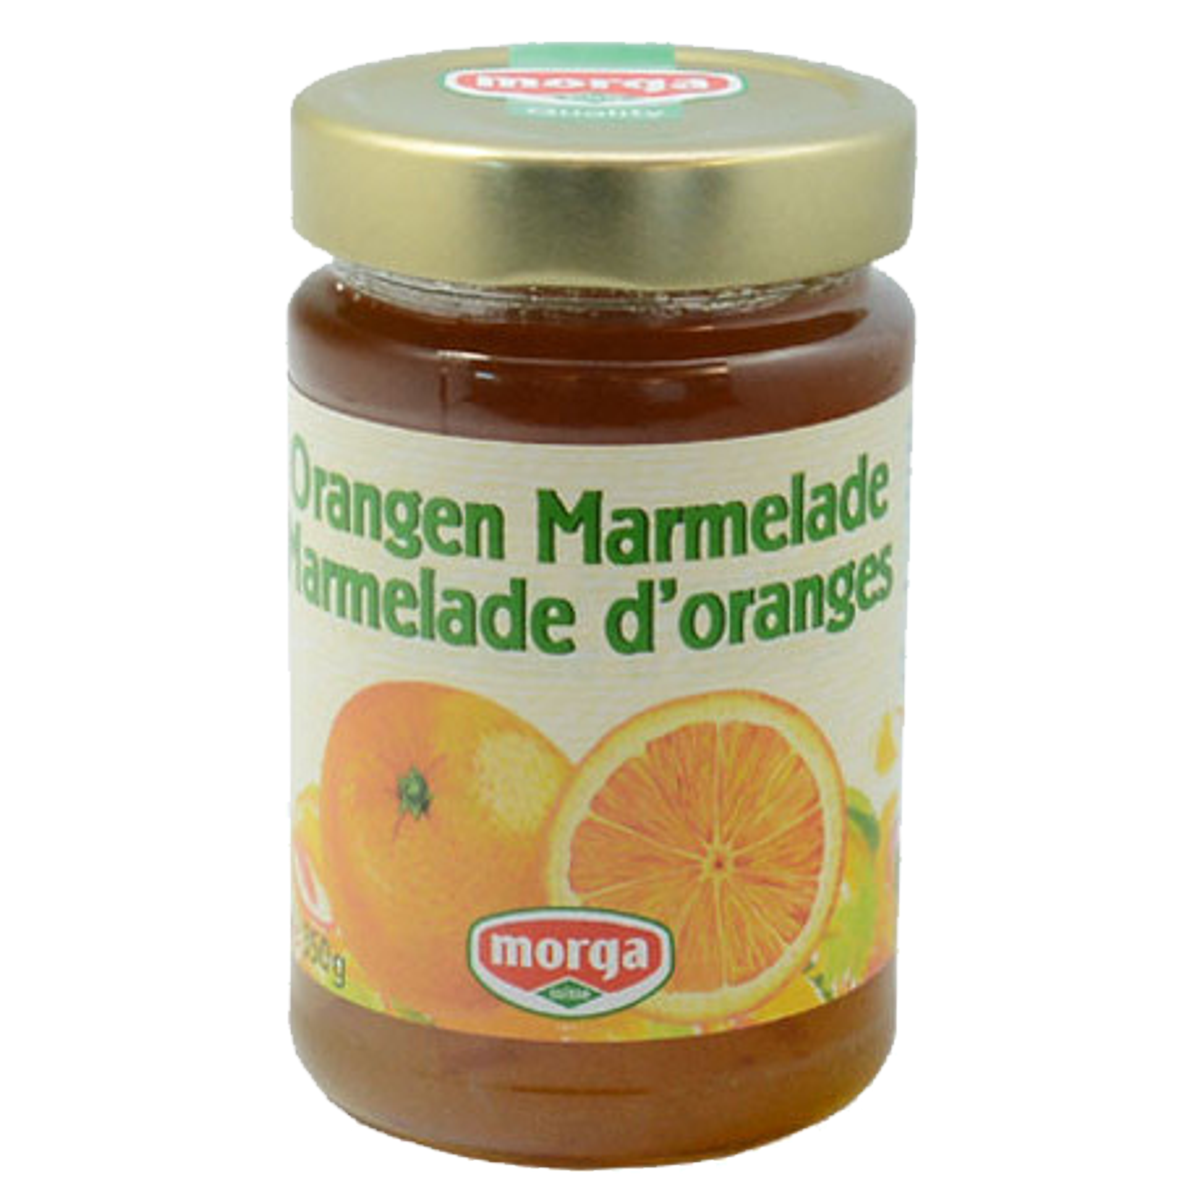 Morga_Marmelade_Orangen_online_kaufen